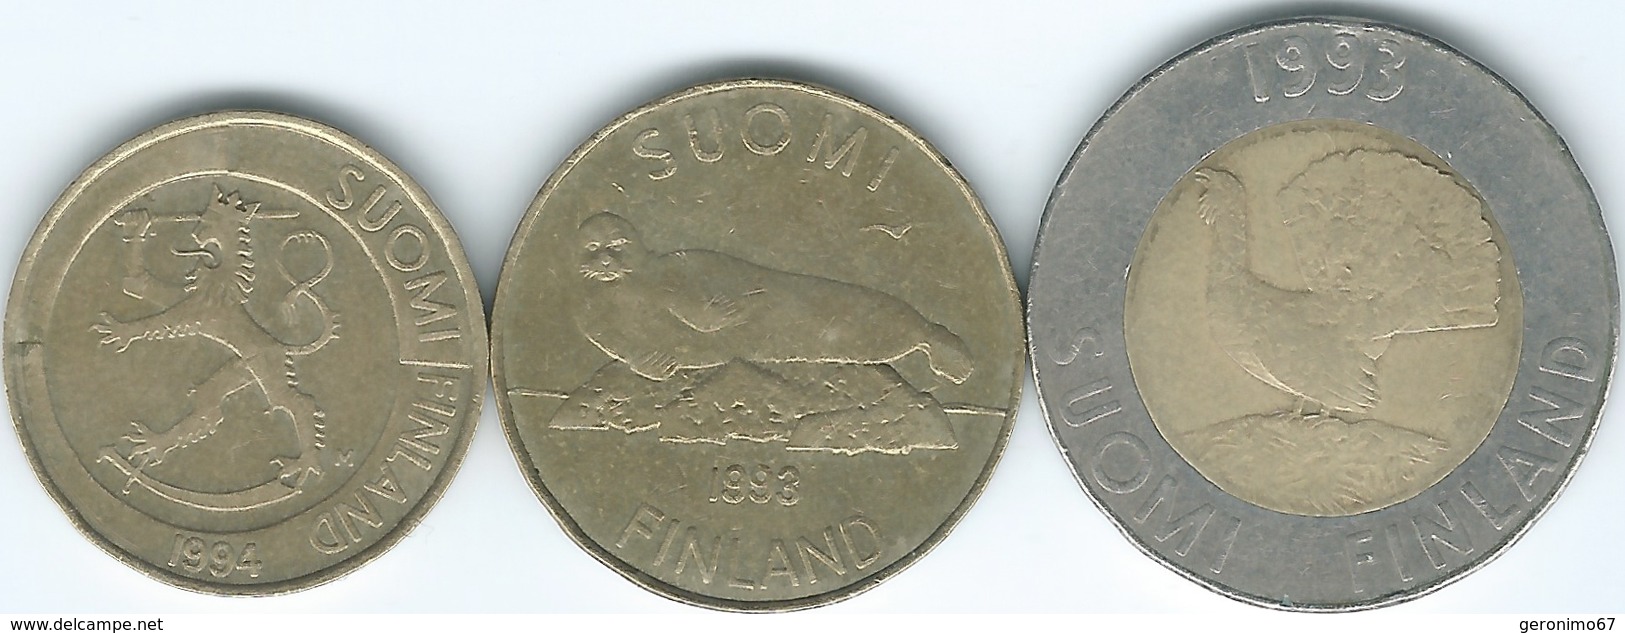 Finland - 1 Markka - 1994 (KM76) 5 Markkaa - 1993 (KM73) & 10 Markkaa - 1993 (KM77) - Finlandia